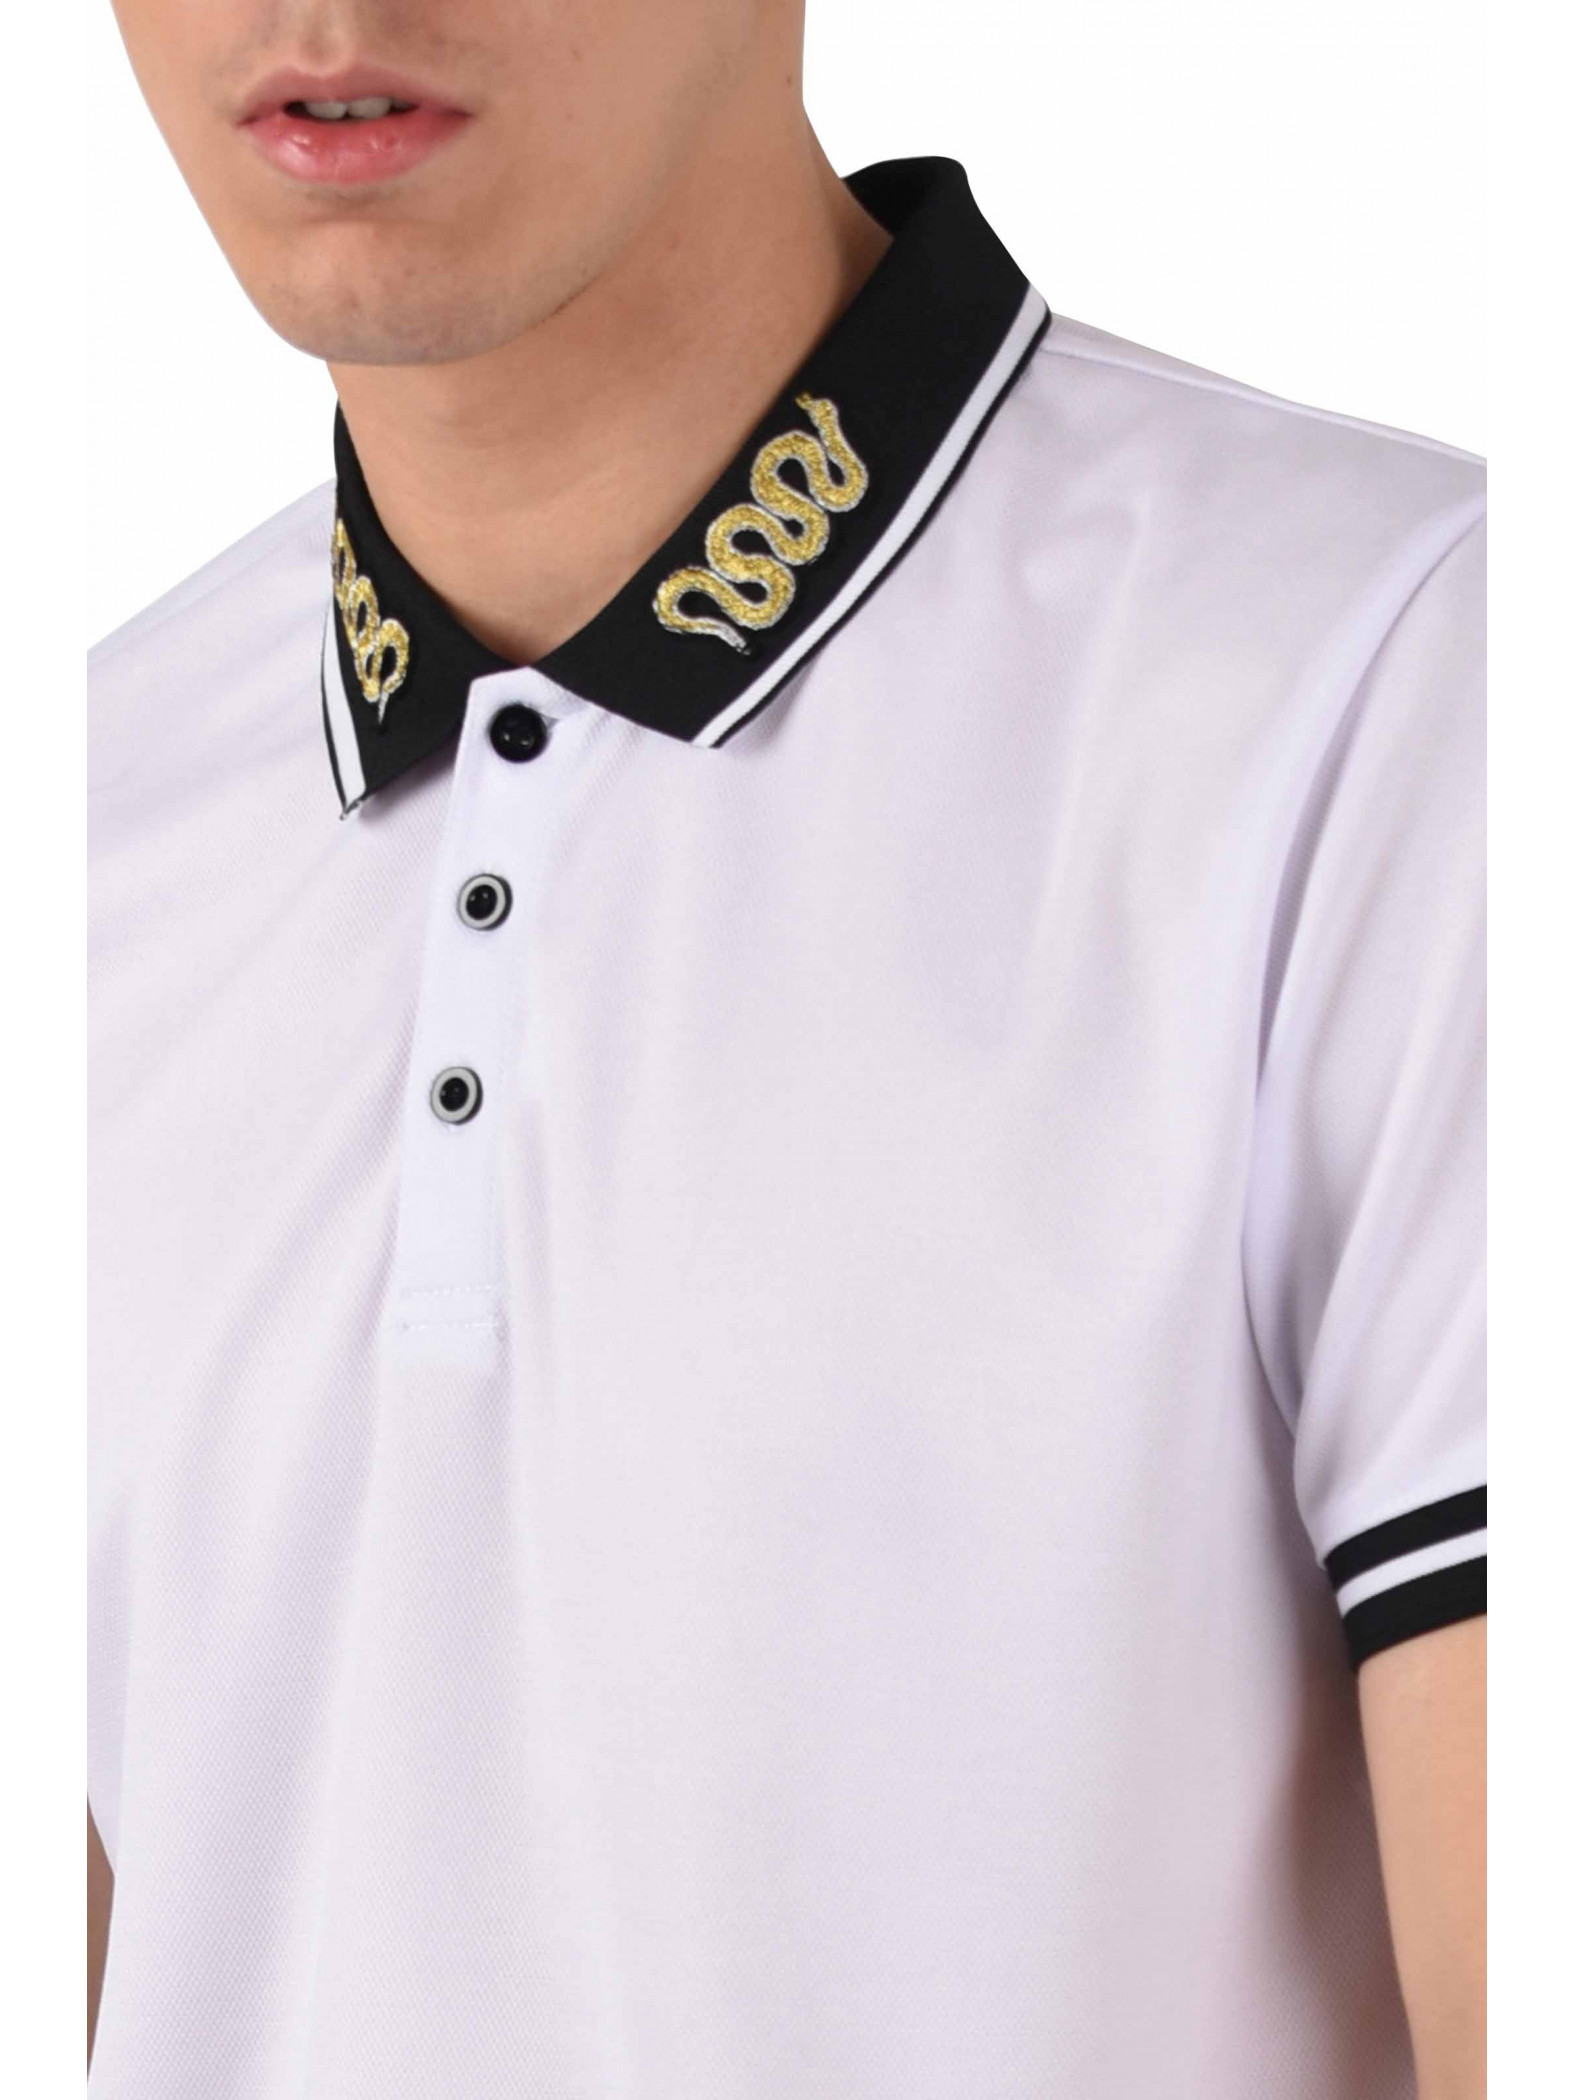 polo shirt with snake on collar